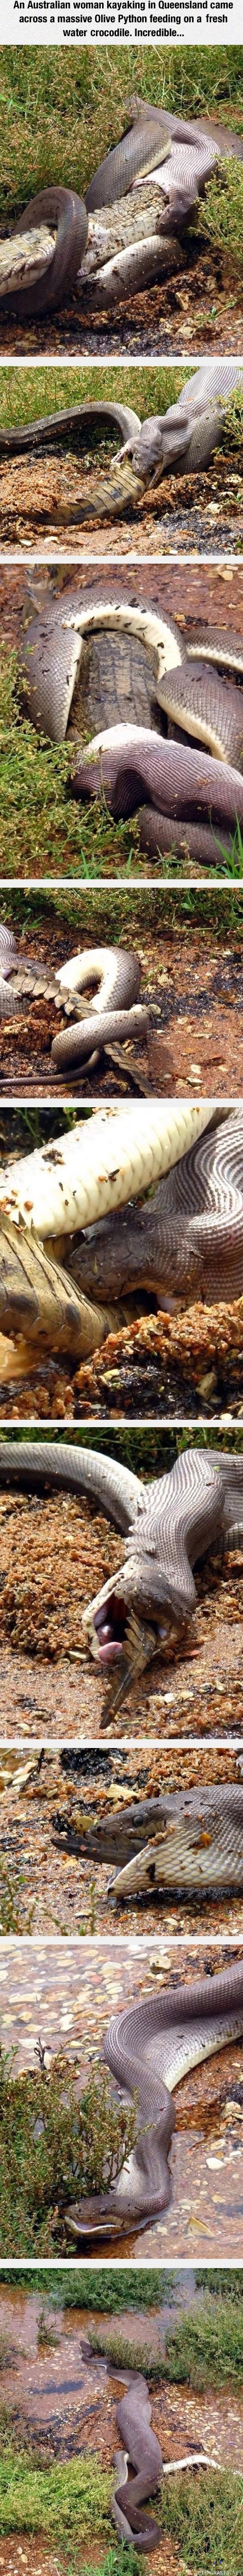 Pyyttoni evästämässä - Normipäivä Australiassa käärme nielemässä krokotiilia